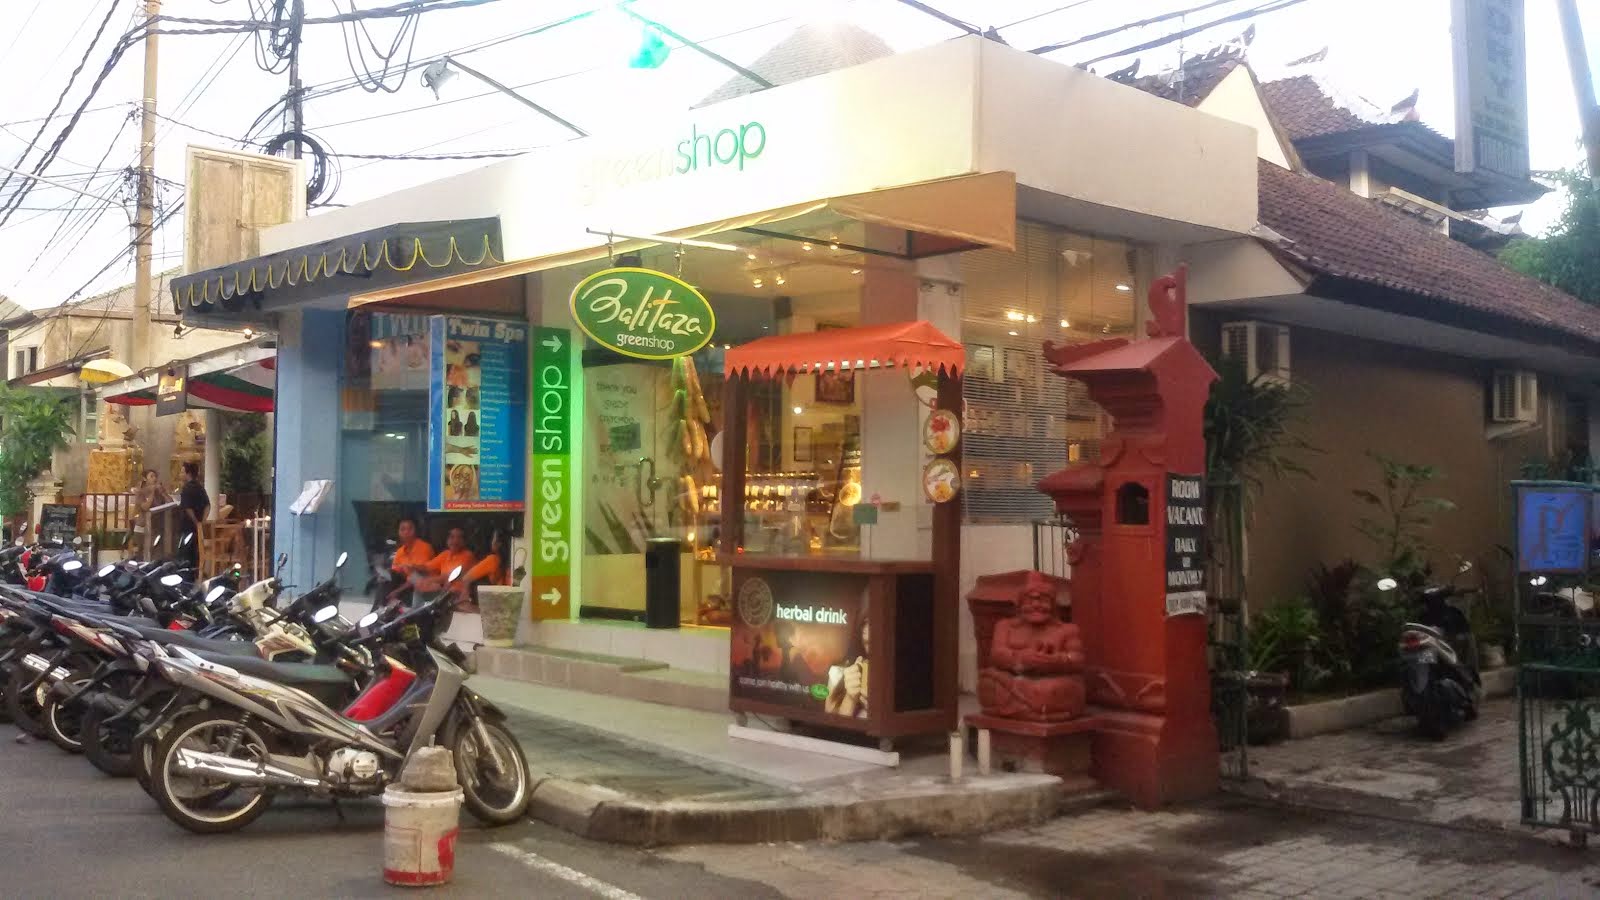 Balitaza Green Shop, Seminyak Jl Camplung Tanduk #7 Ph 0878 6206 5200